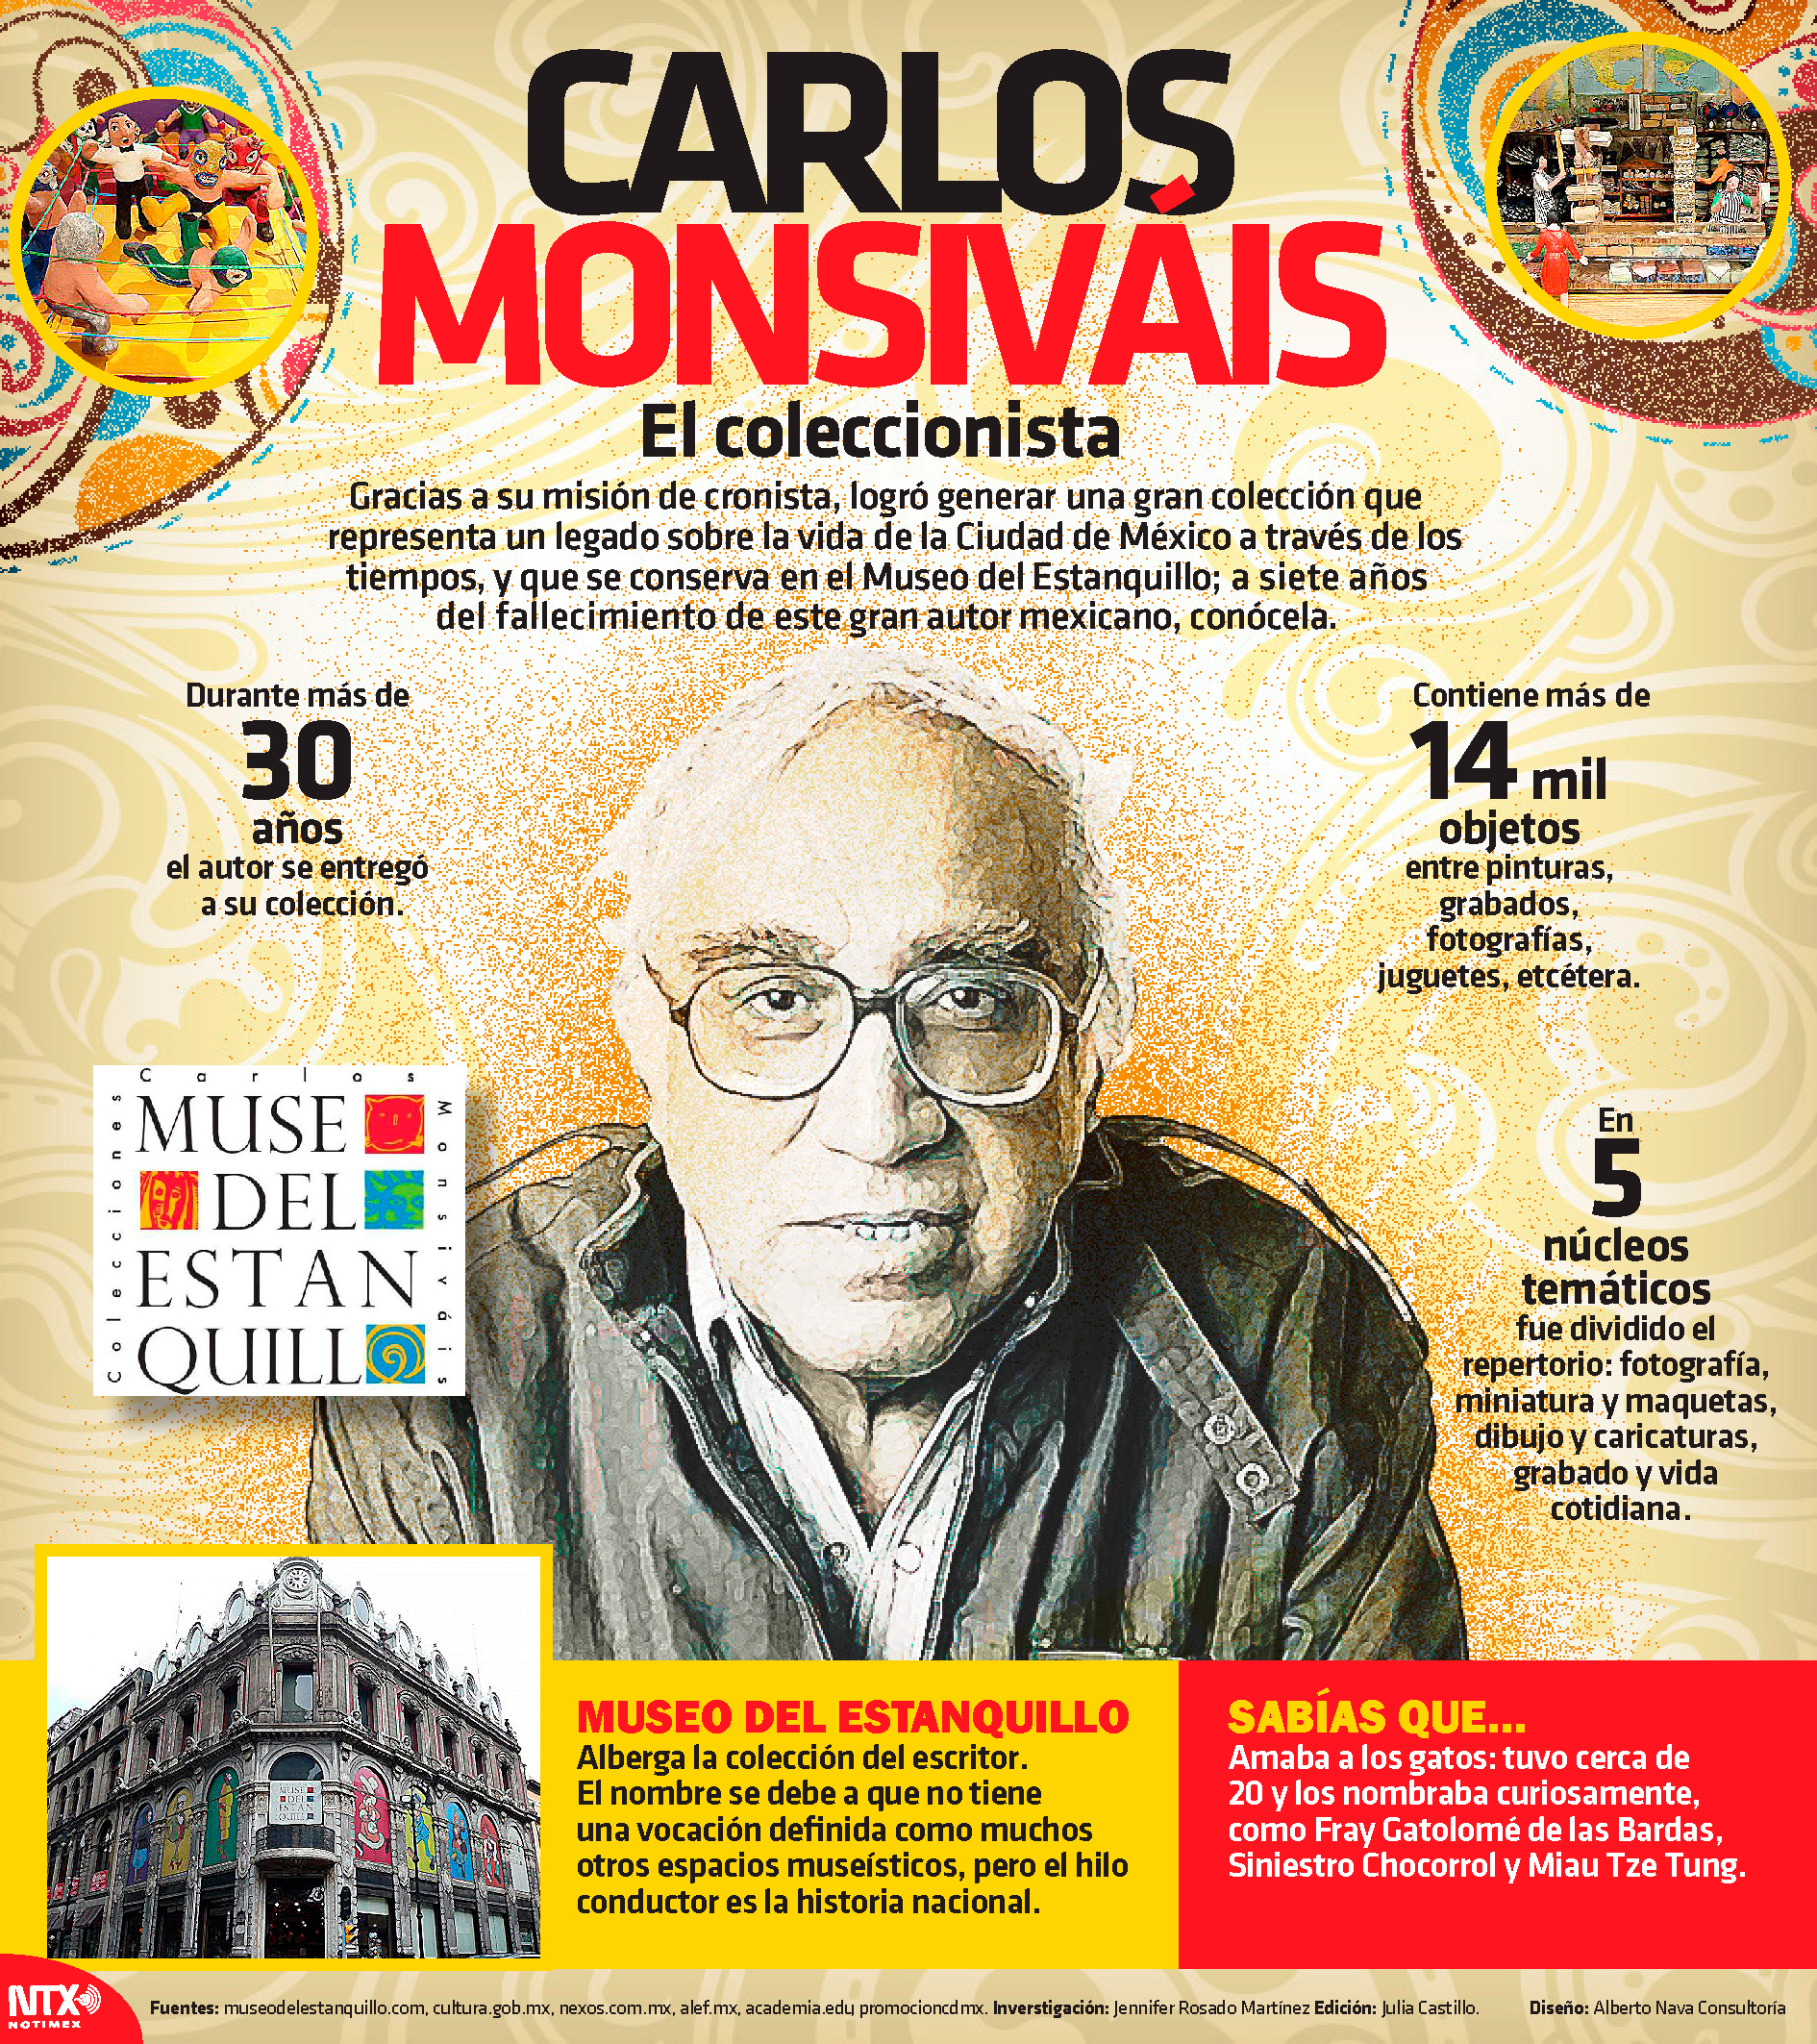 Carlos Monsivis, el coleccionista